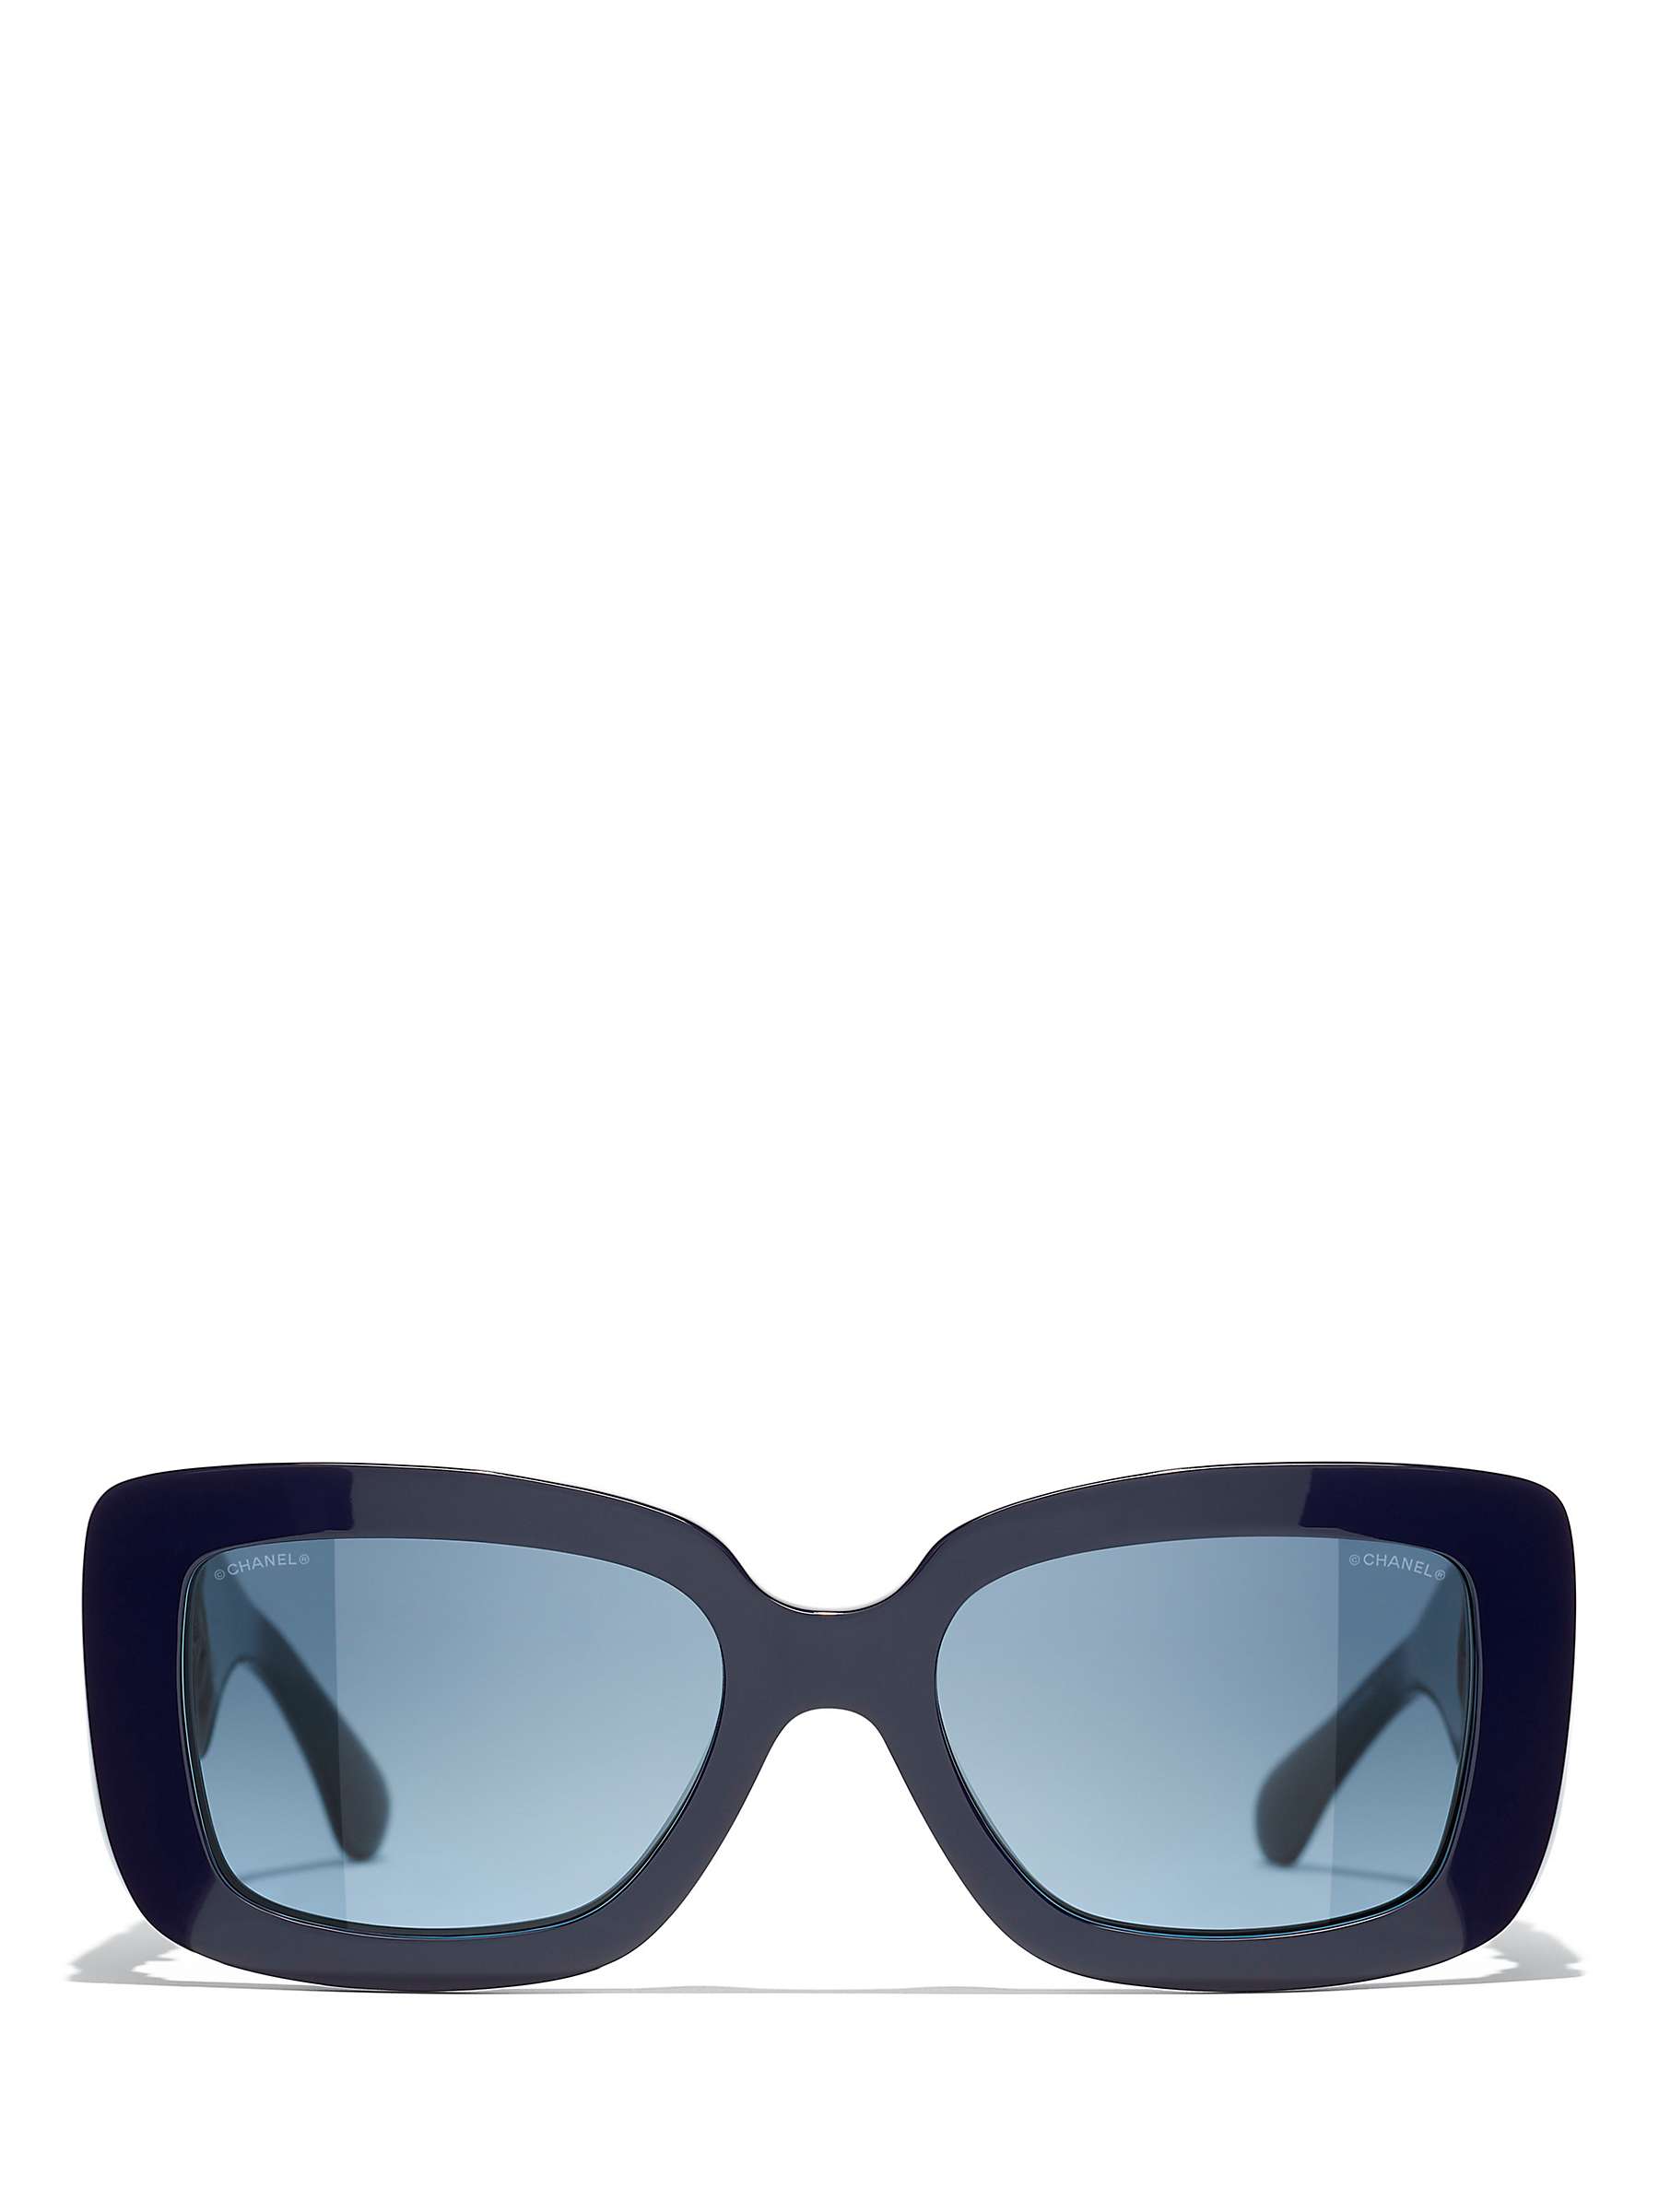 Chanel Square Sunglasses CH5479A 56 Blue & Blue Sunglasses